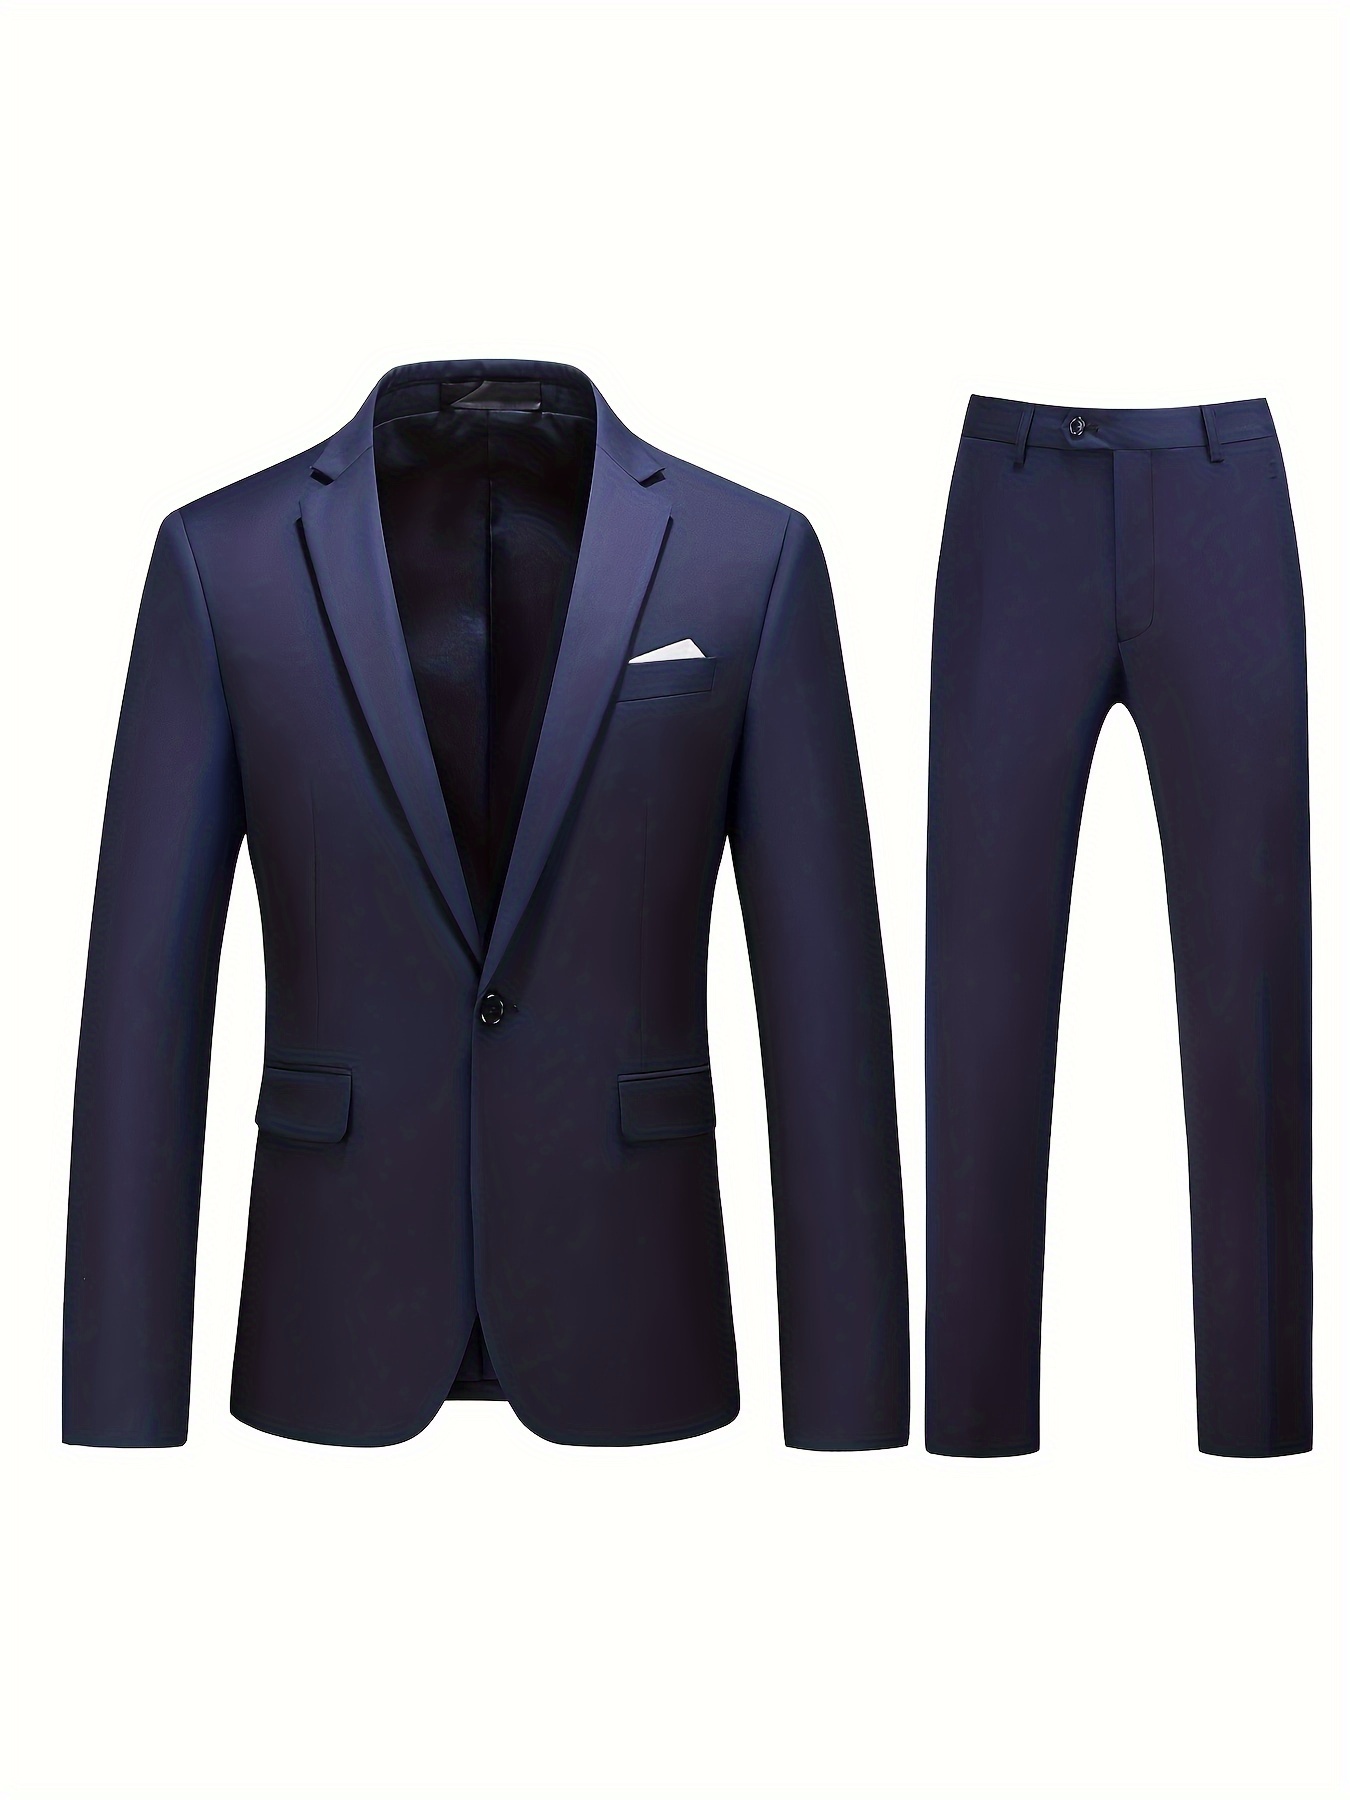 Men's Plain Colour Formal Blazer and Pant 